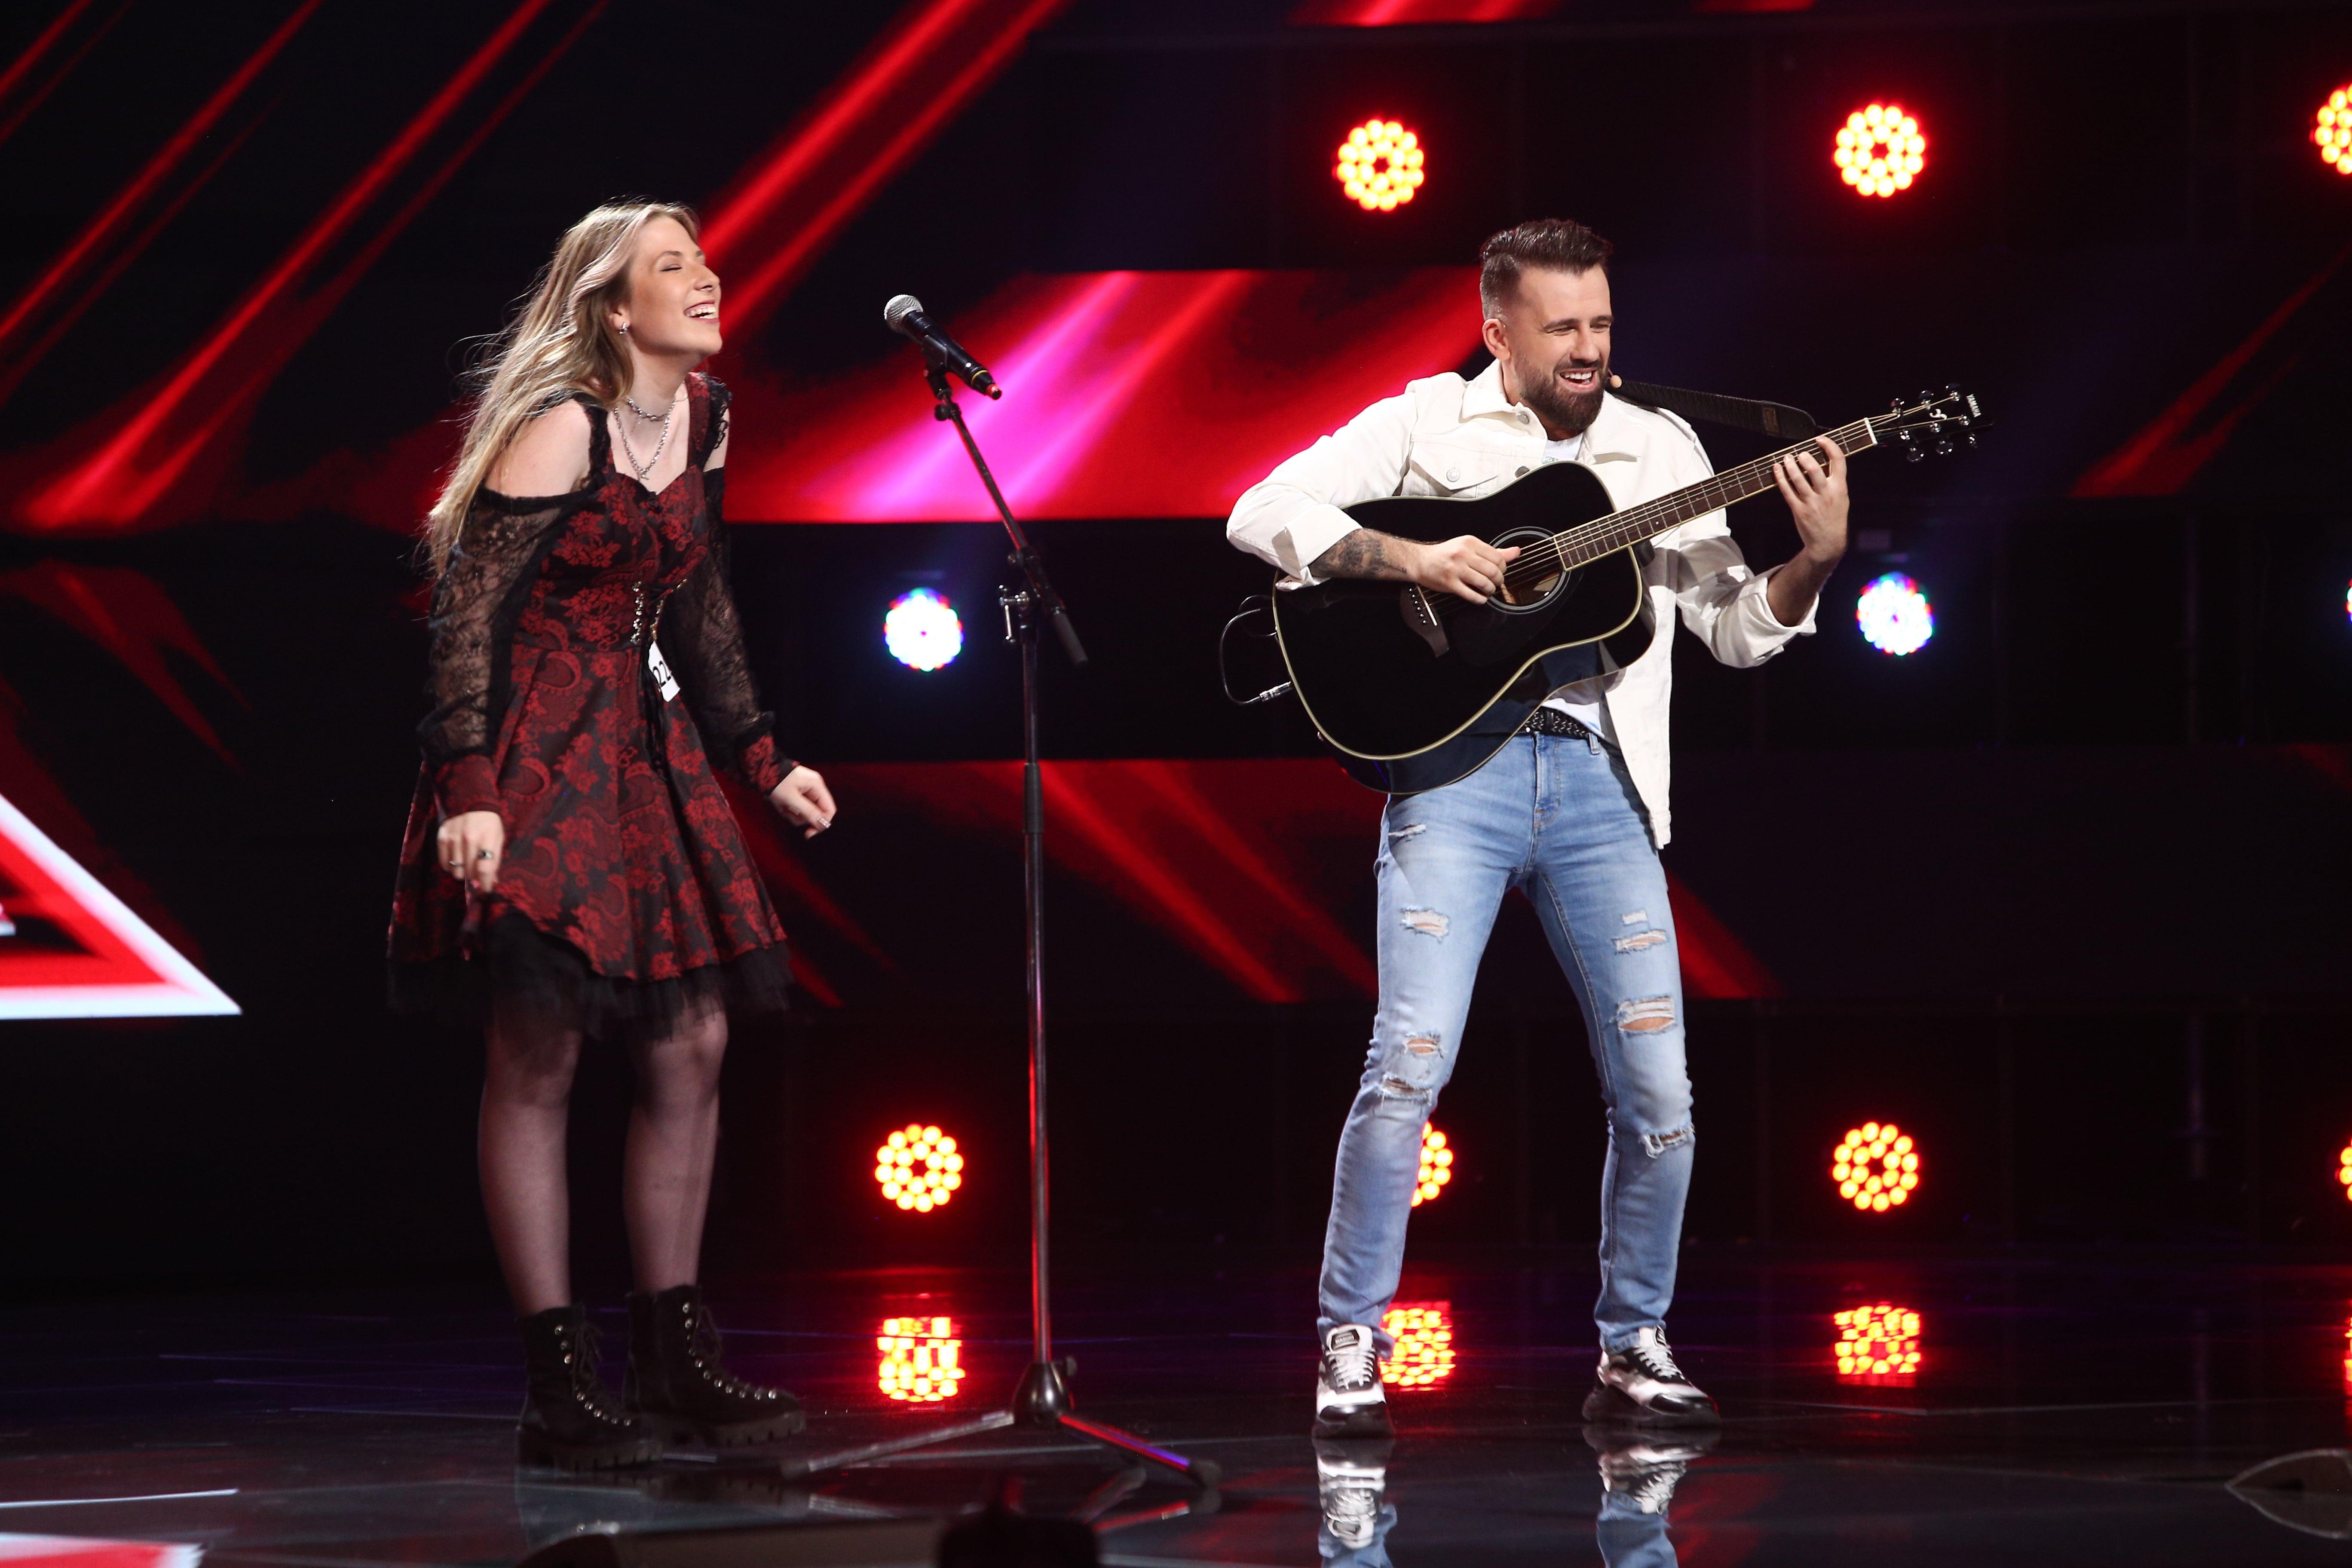 Delia Ligoțchi, la X Factor 2021, sezonul 10, ediția 5